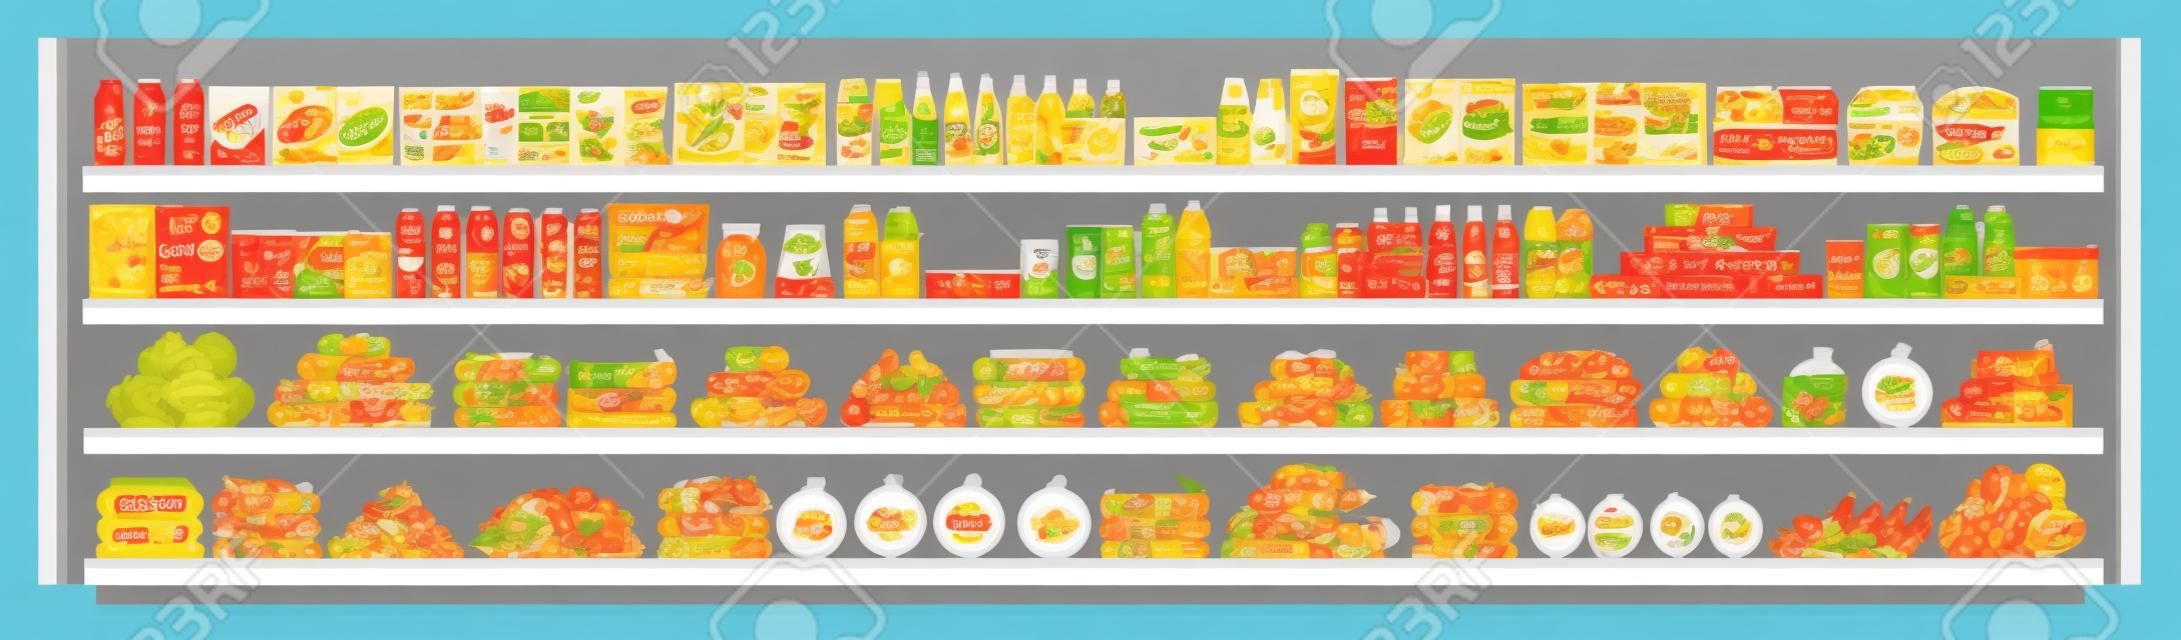 Artículos comestibles en los estantes de los supermercados y ofertas llenas de surtido de alimentos y bebidas ilustración de fondo transparente de vector plano. Concepto comercial y minorista.